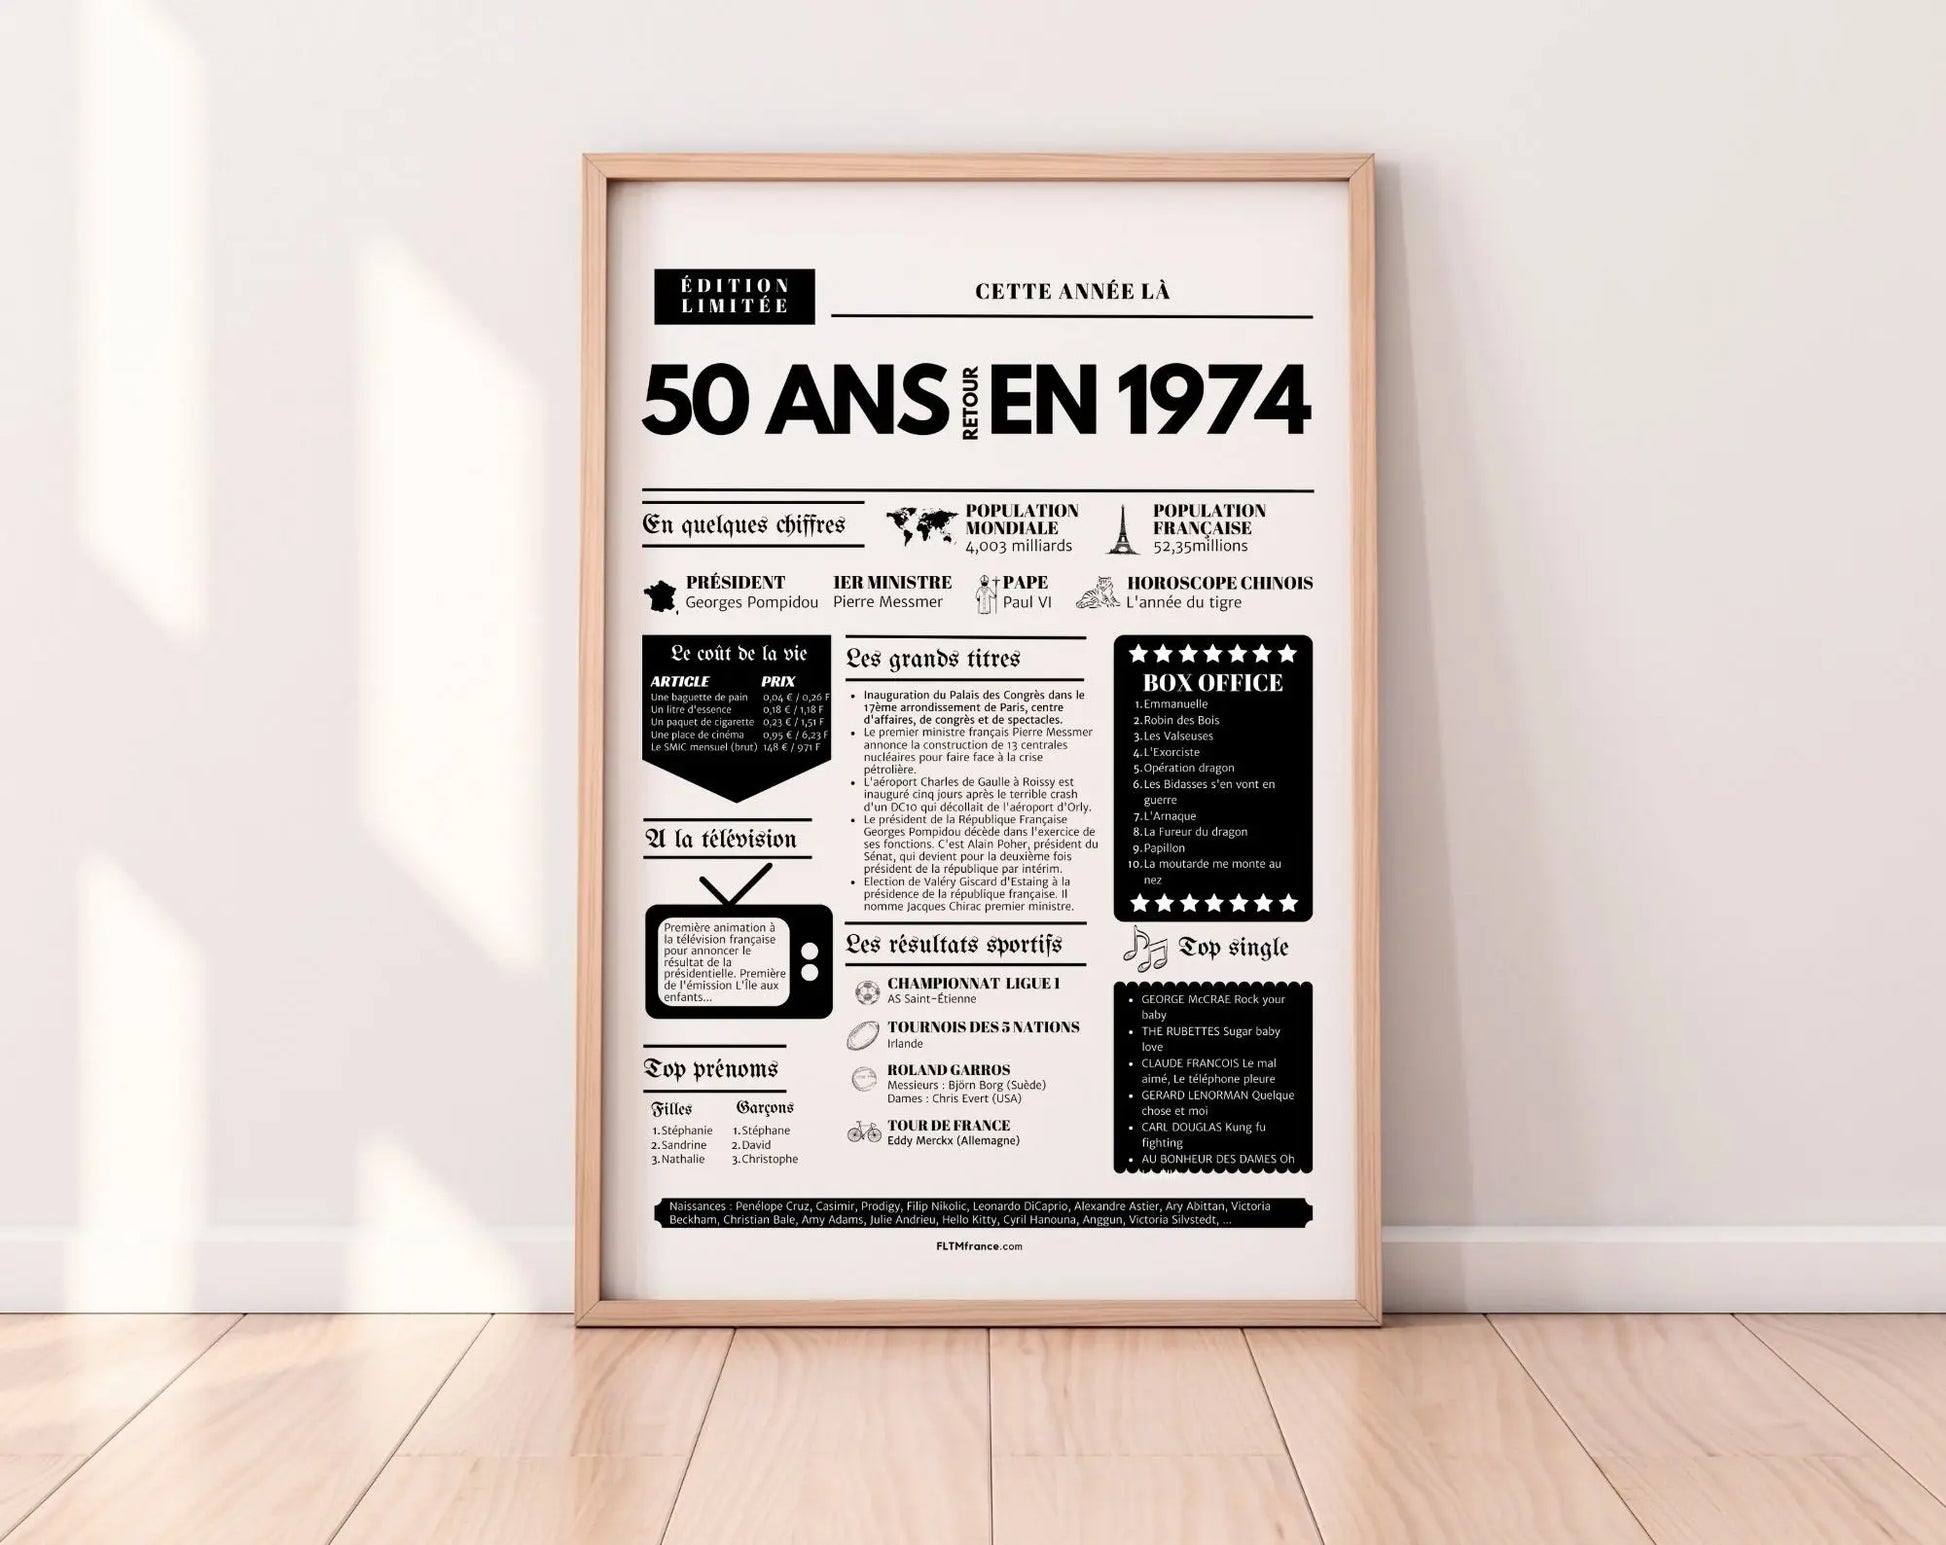 Affiche 50 ans retour en 1974 année de naissance - Carte anniversaire 50 ans FLTMfrance